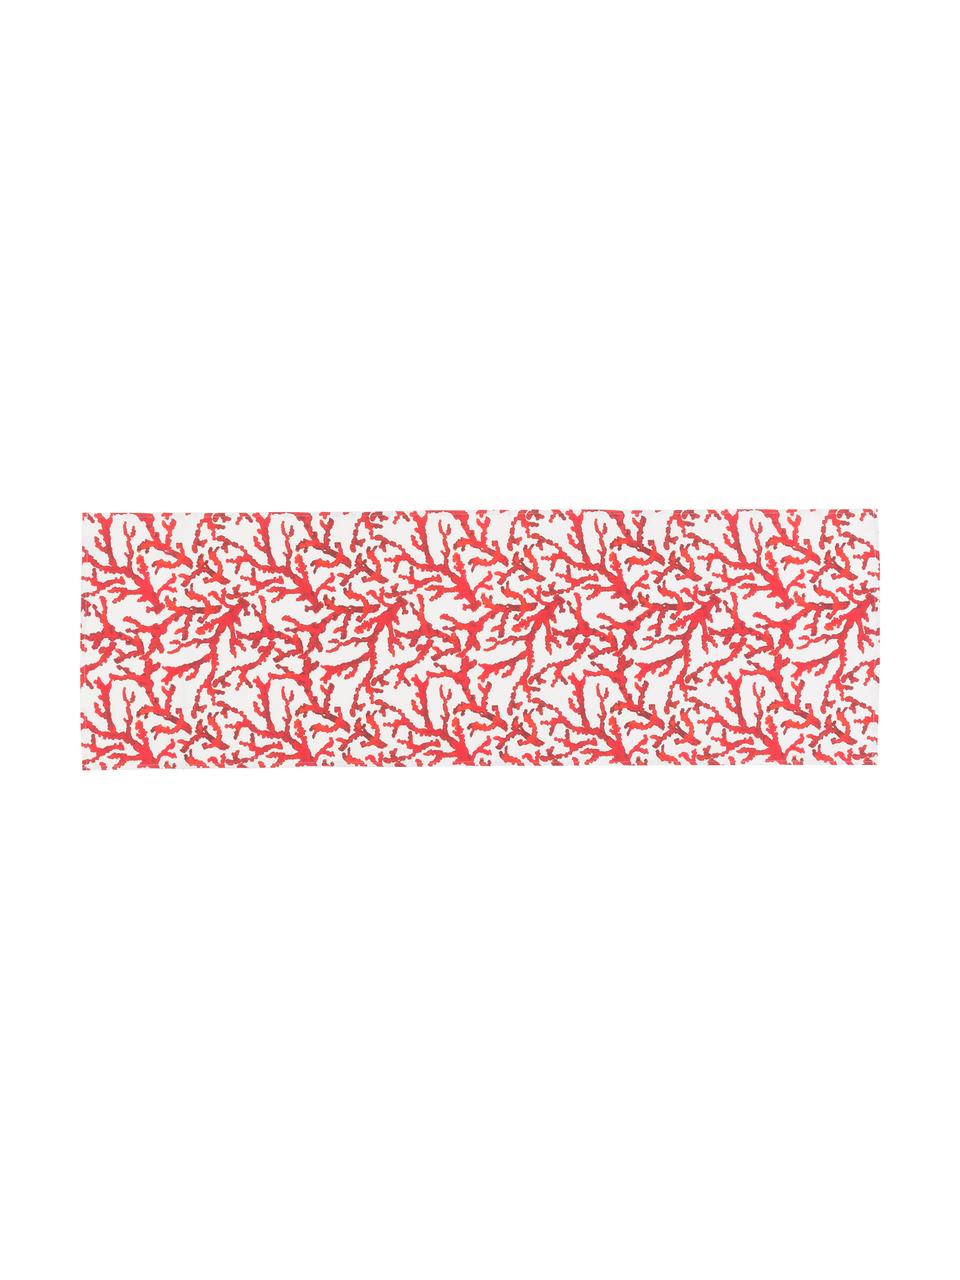 Katoenen tafellopers Estran met koraalmotief, 2 stuks, Katoen, Rood, wit, 50 x 160 cm